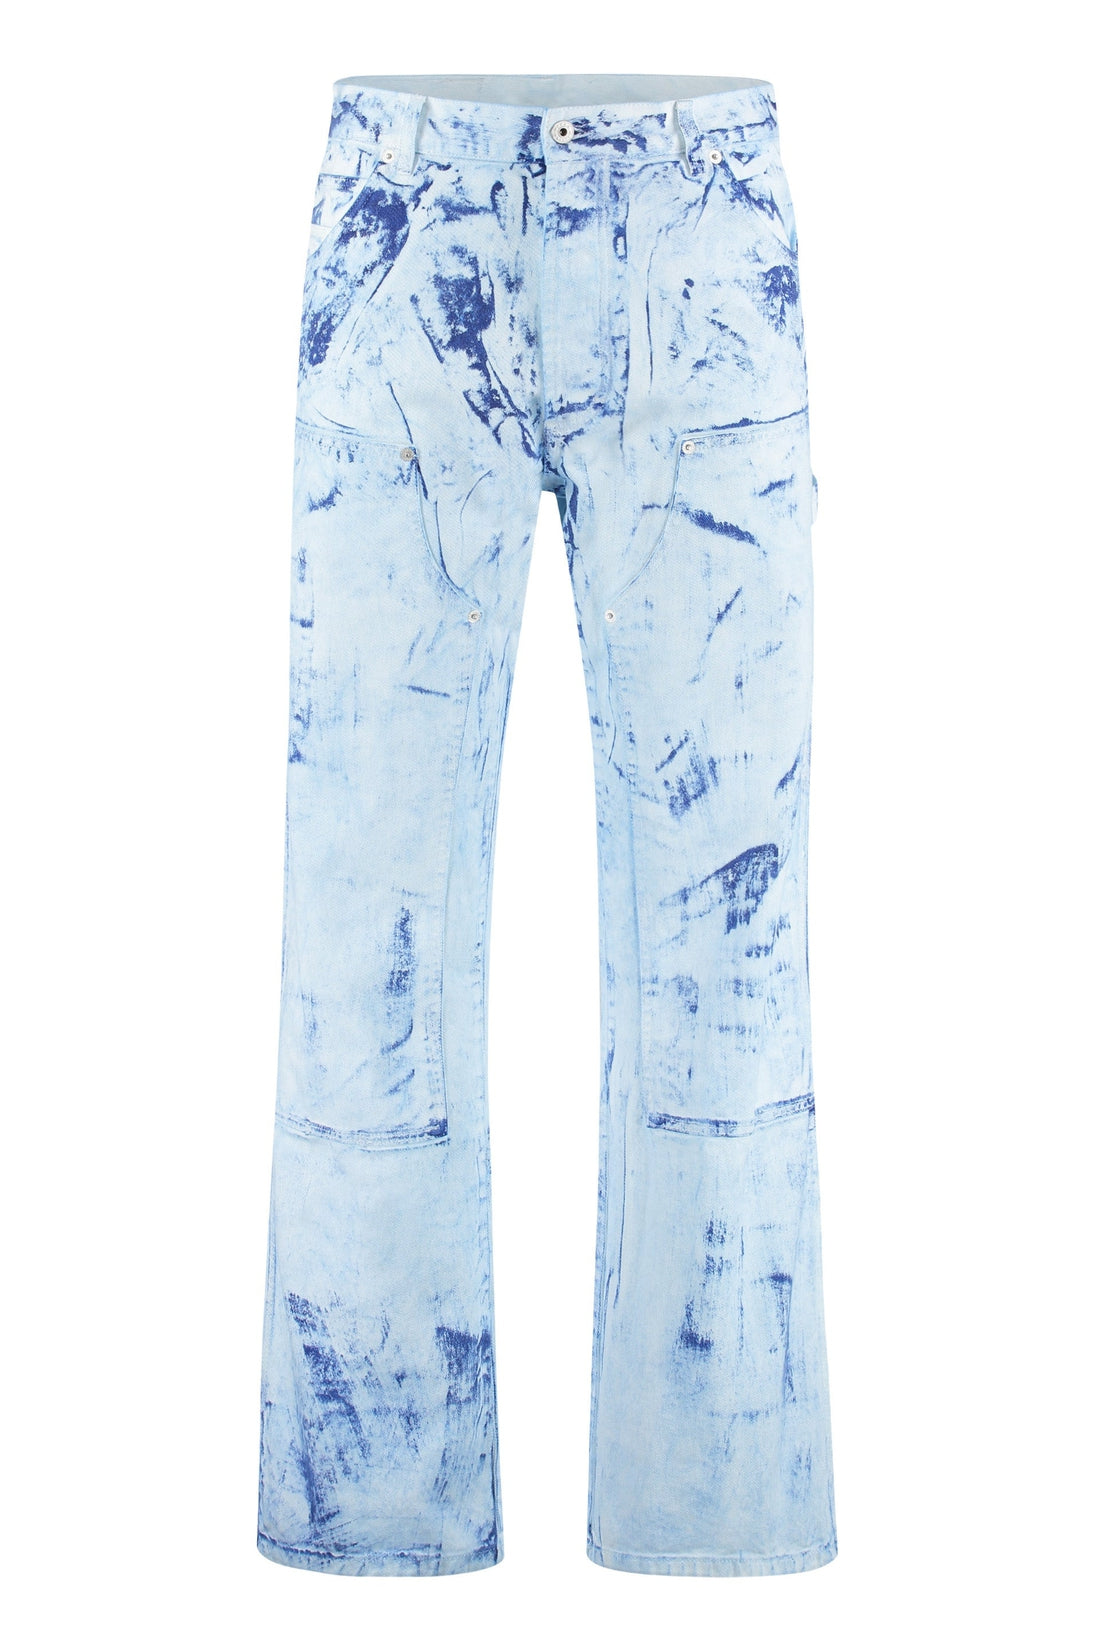 Heron Preston-OUTLET-SALE-Carpenter jeans-ARCHIVIST